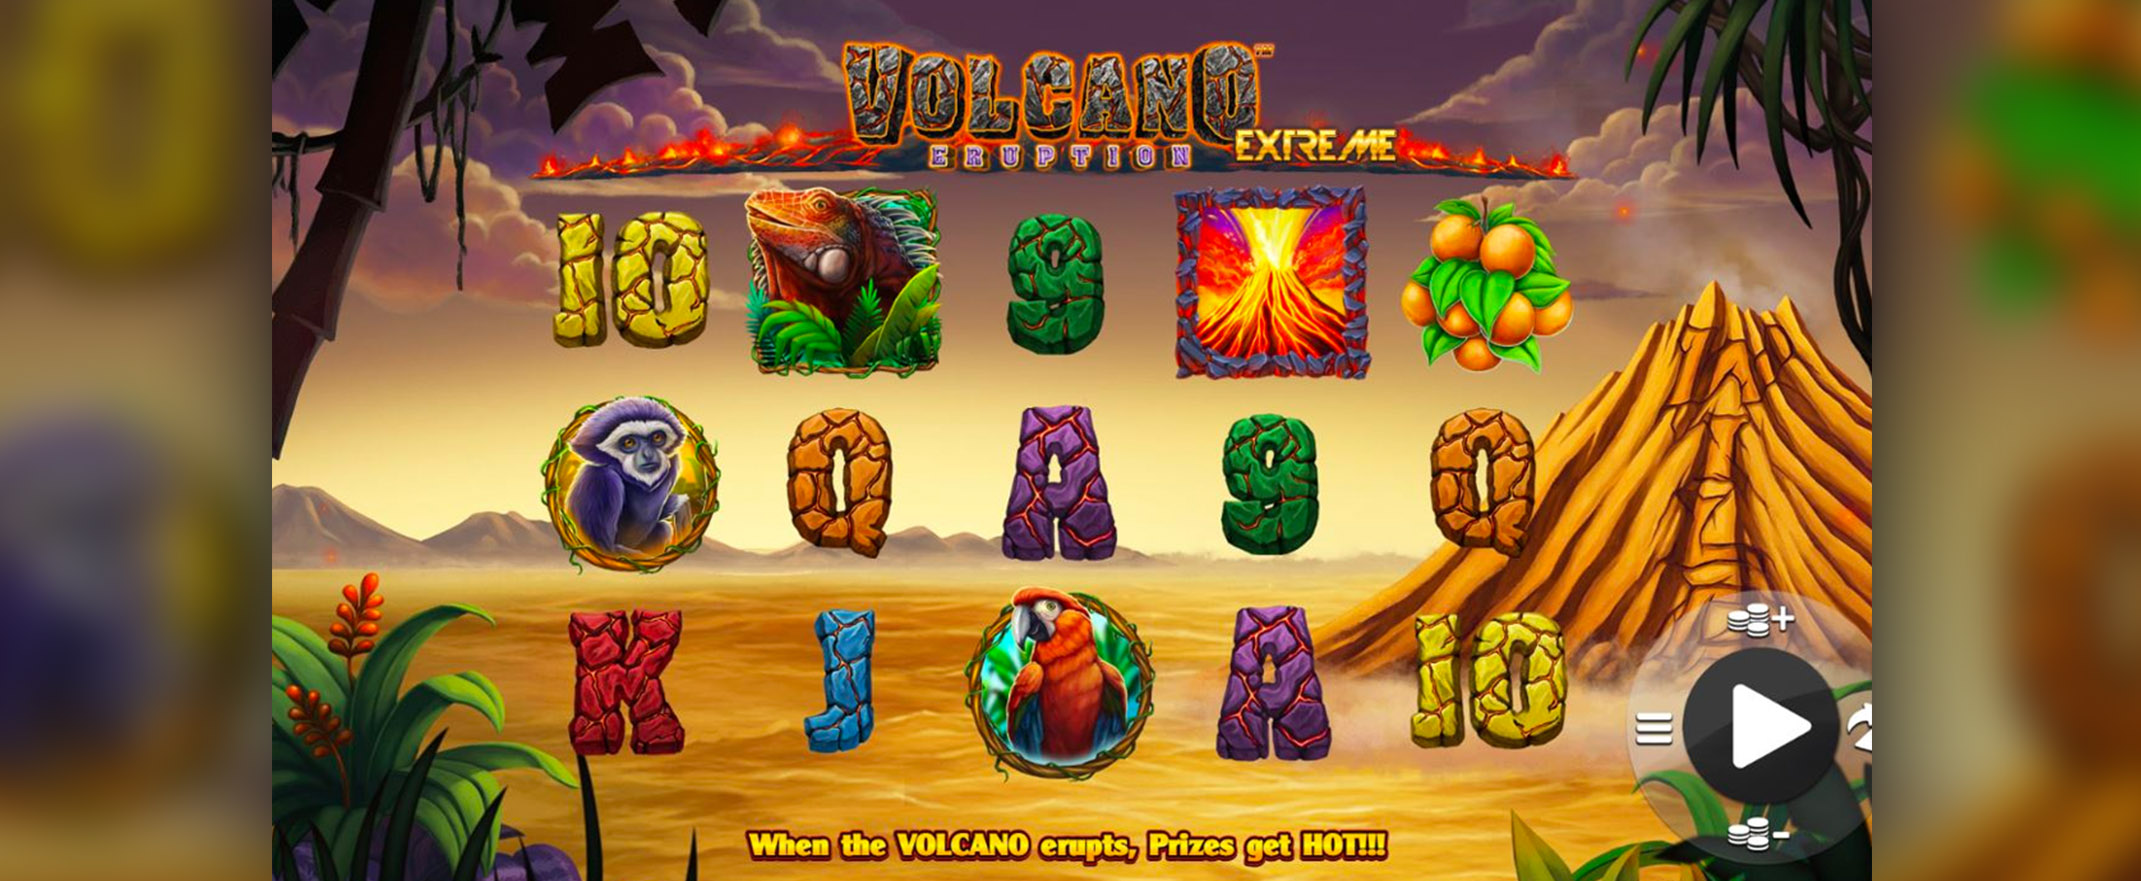 Volcano Eruption Extreme Spielautomat von NextGen